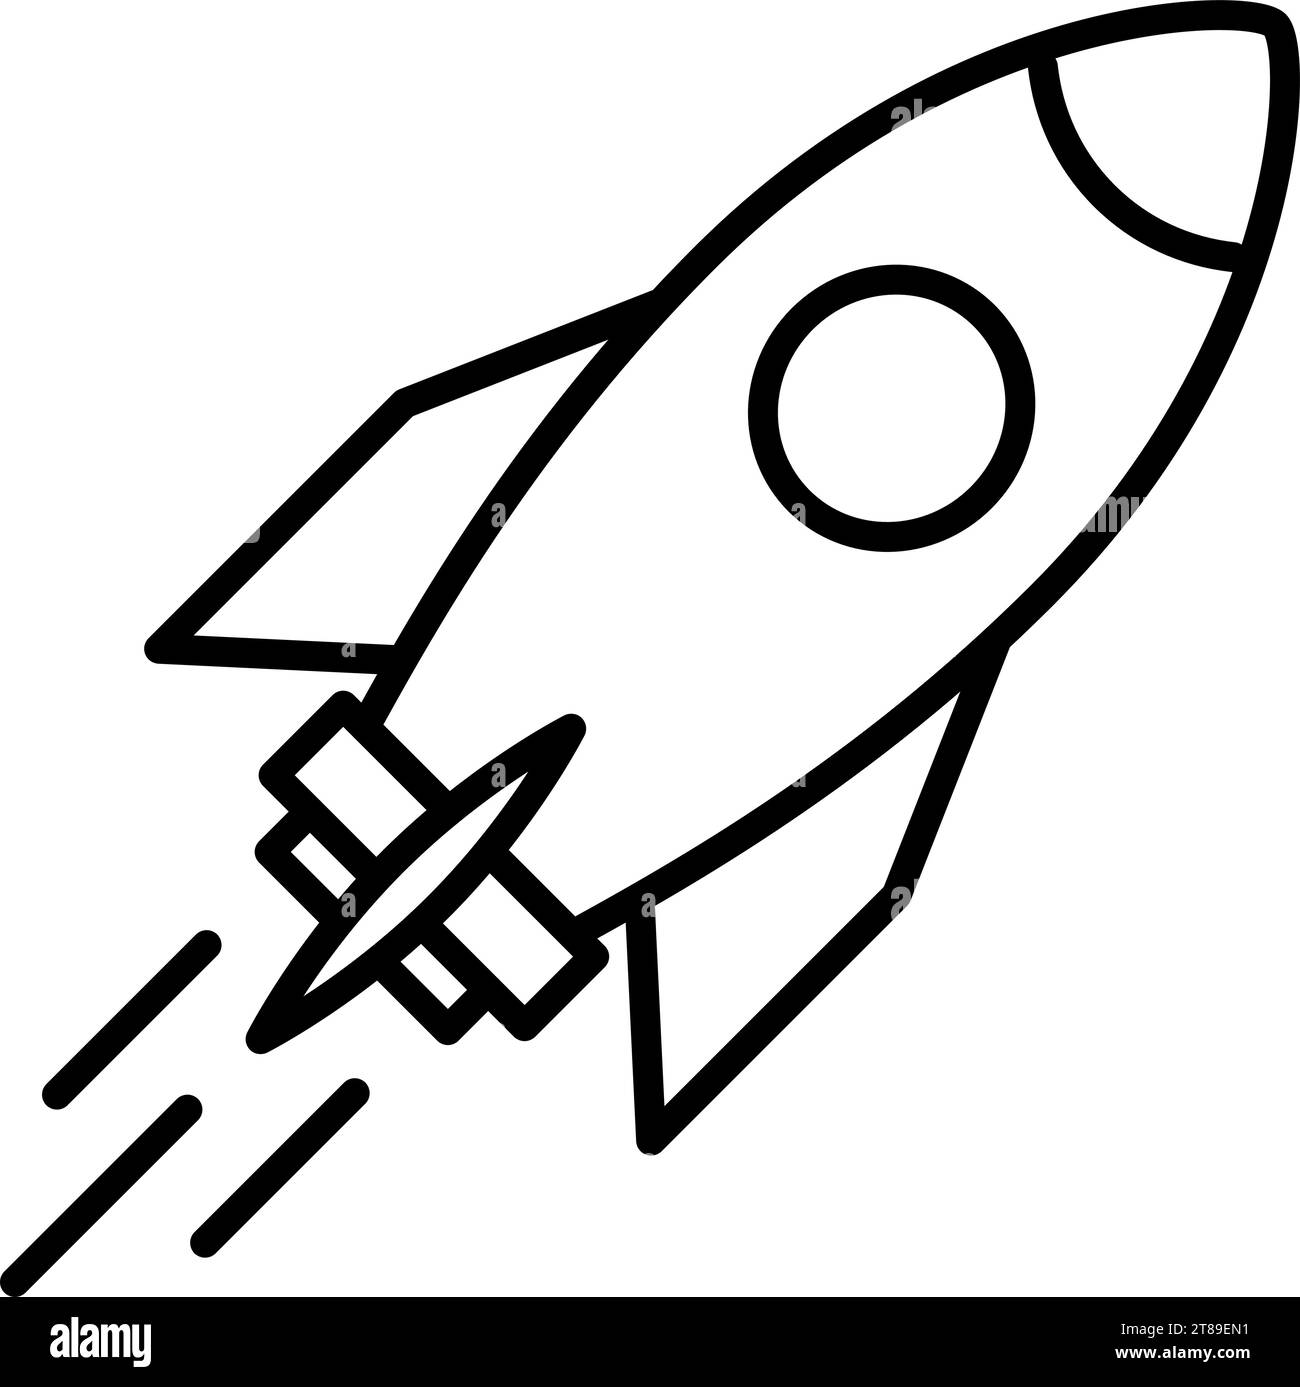 Lineare Ikone eines Raketenschiffs als Konzept kreativer Geschäftsidee Stock Vektor